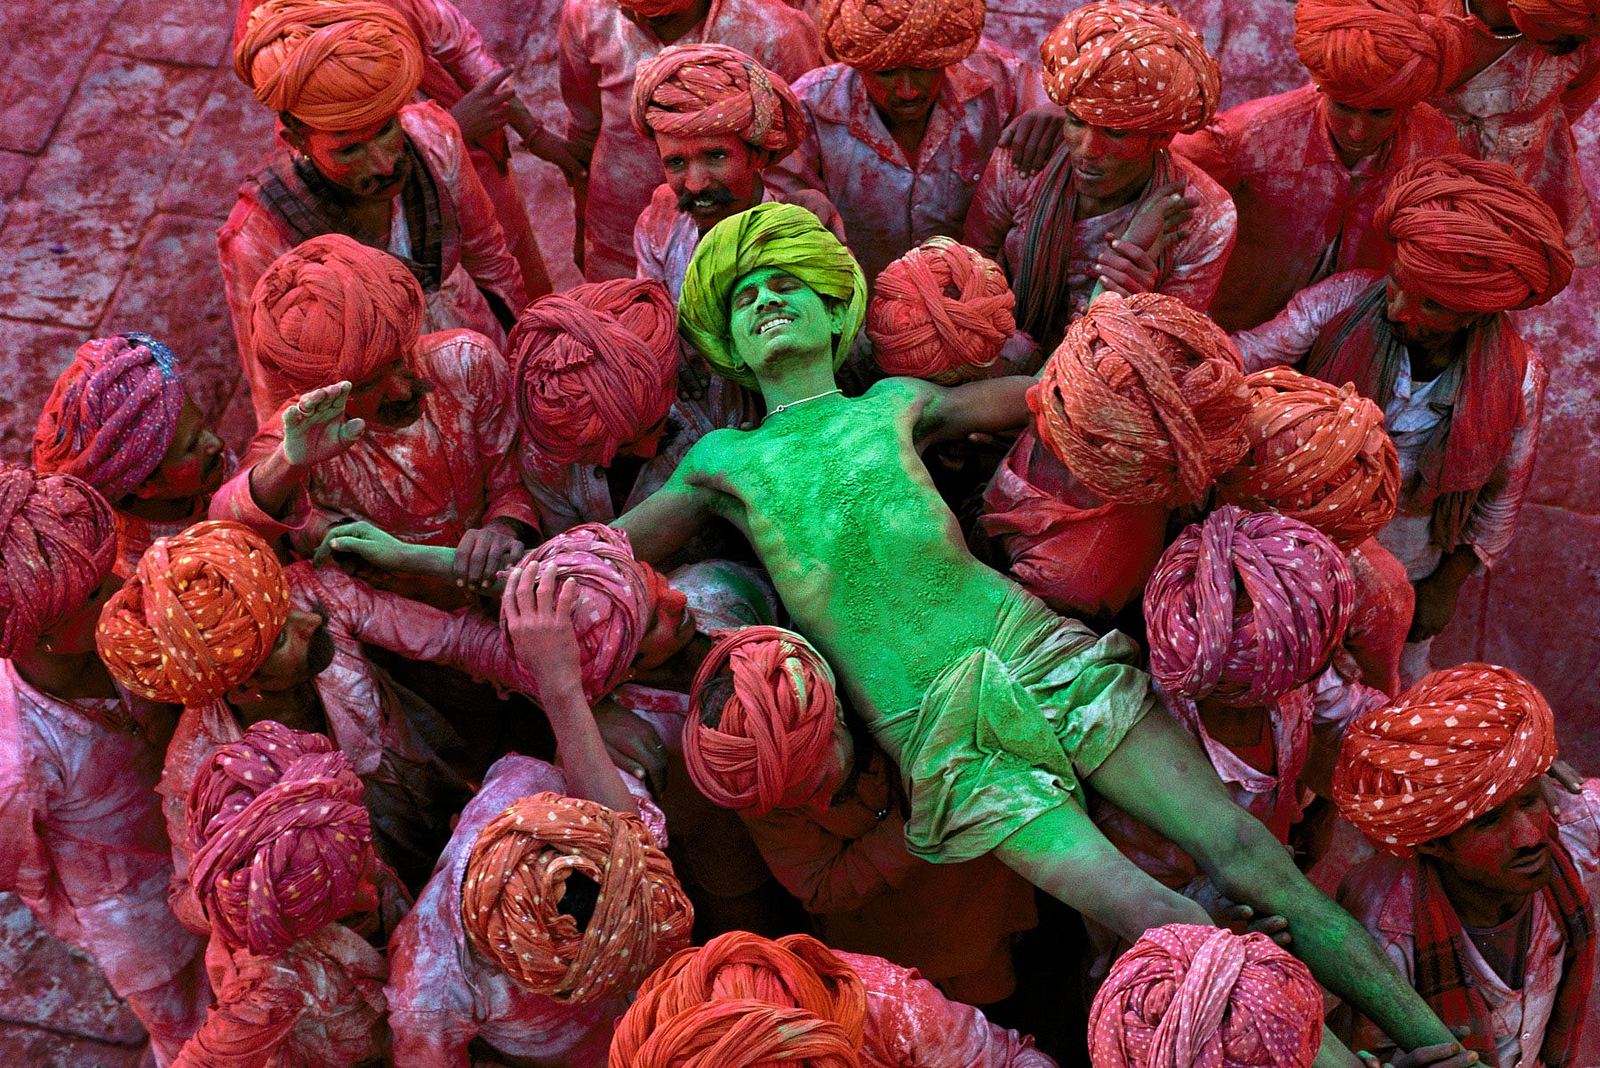 India. Photo - Luca Pelucchi